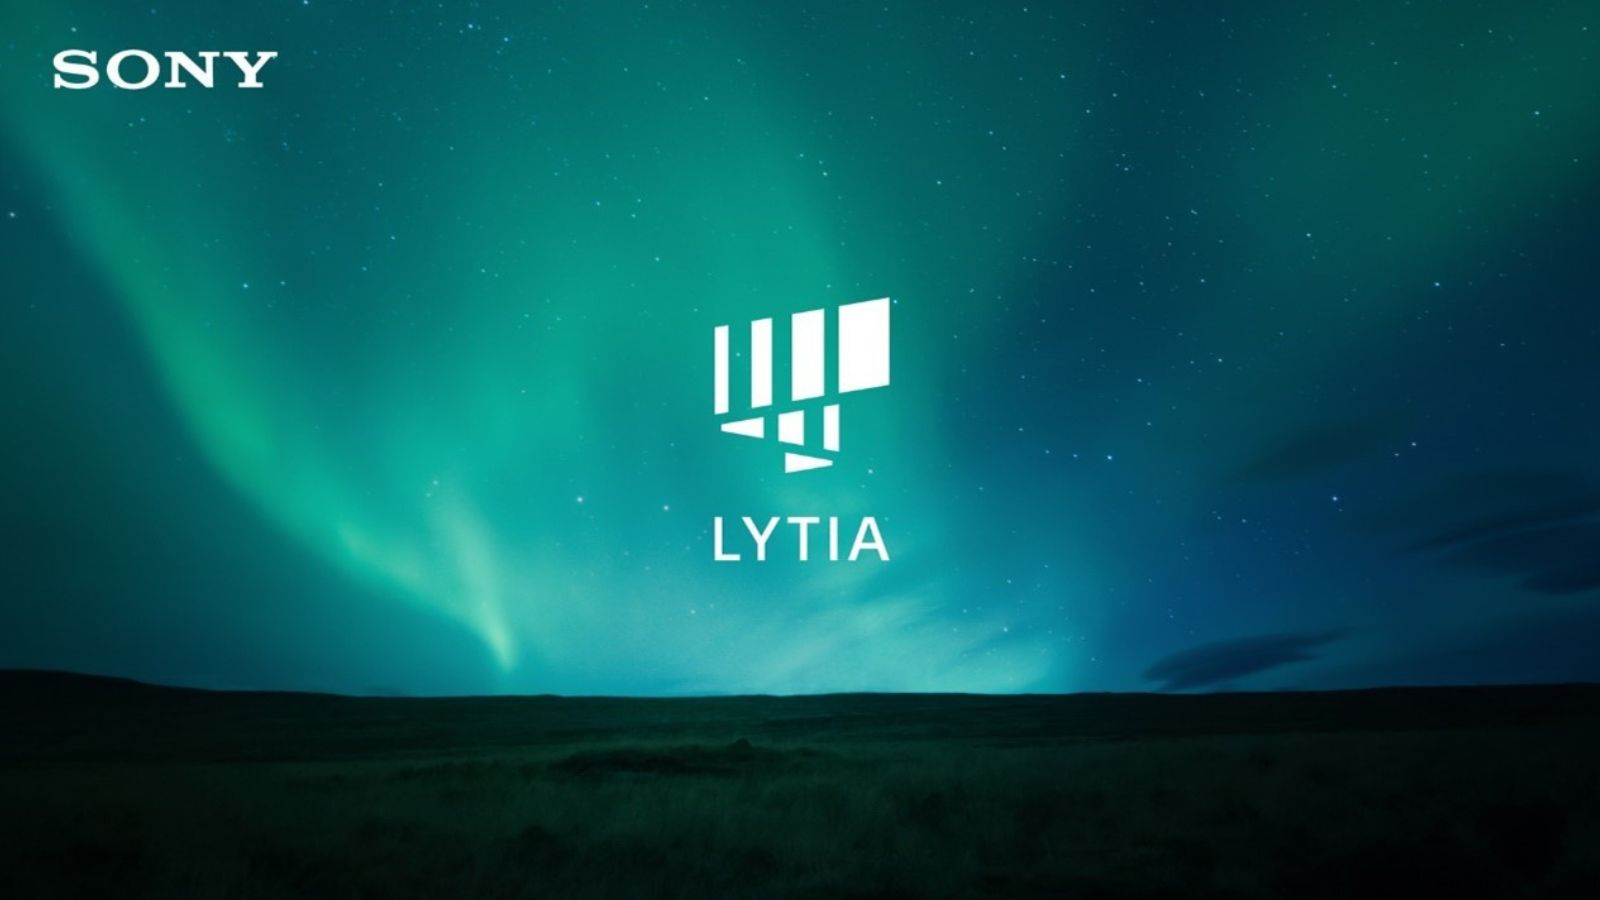 Sony представляет новые мобильные датчики изображения марки LYTIA, обеспечивающие уникальные возможности обработки изображений